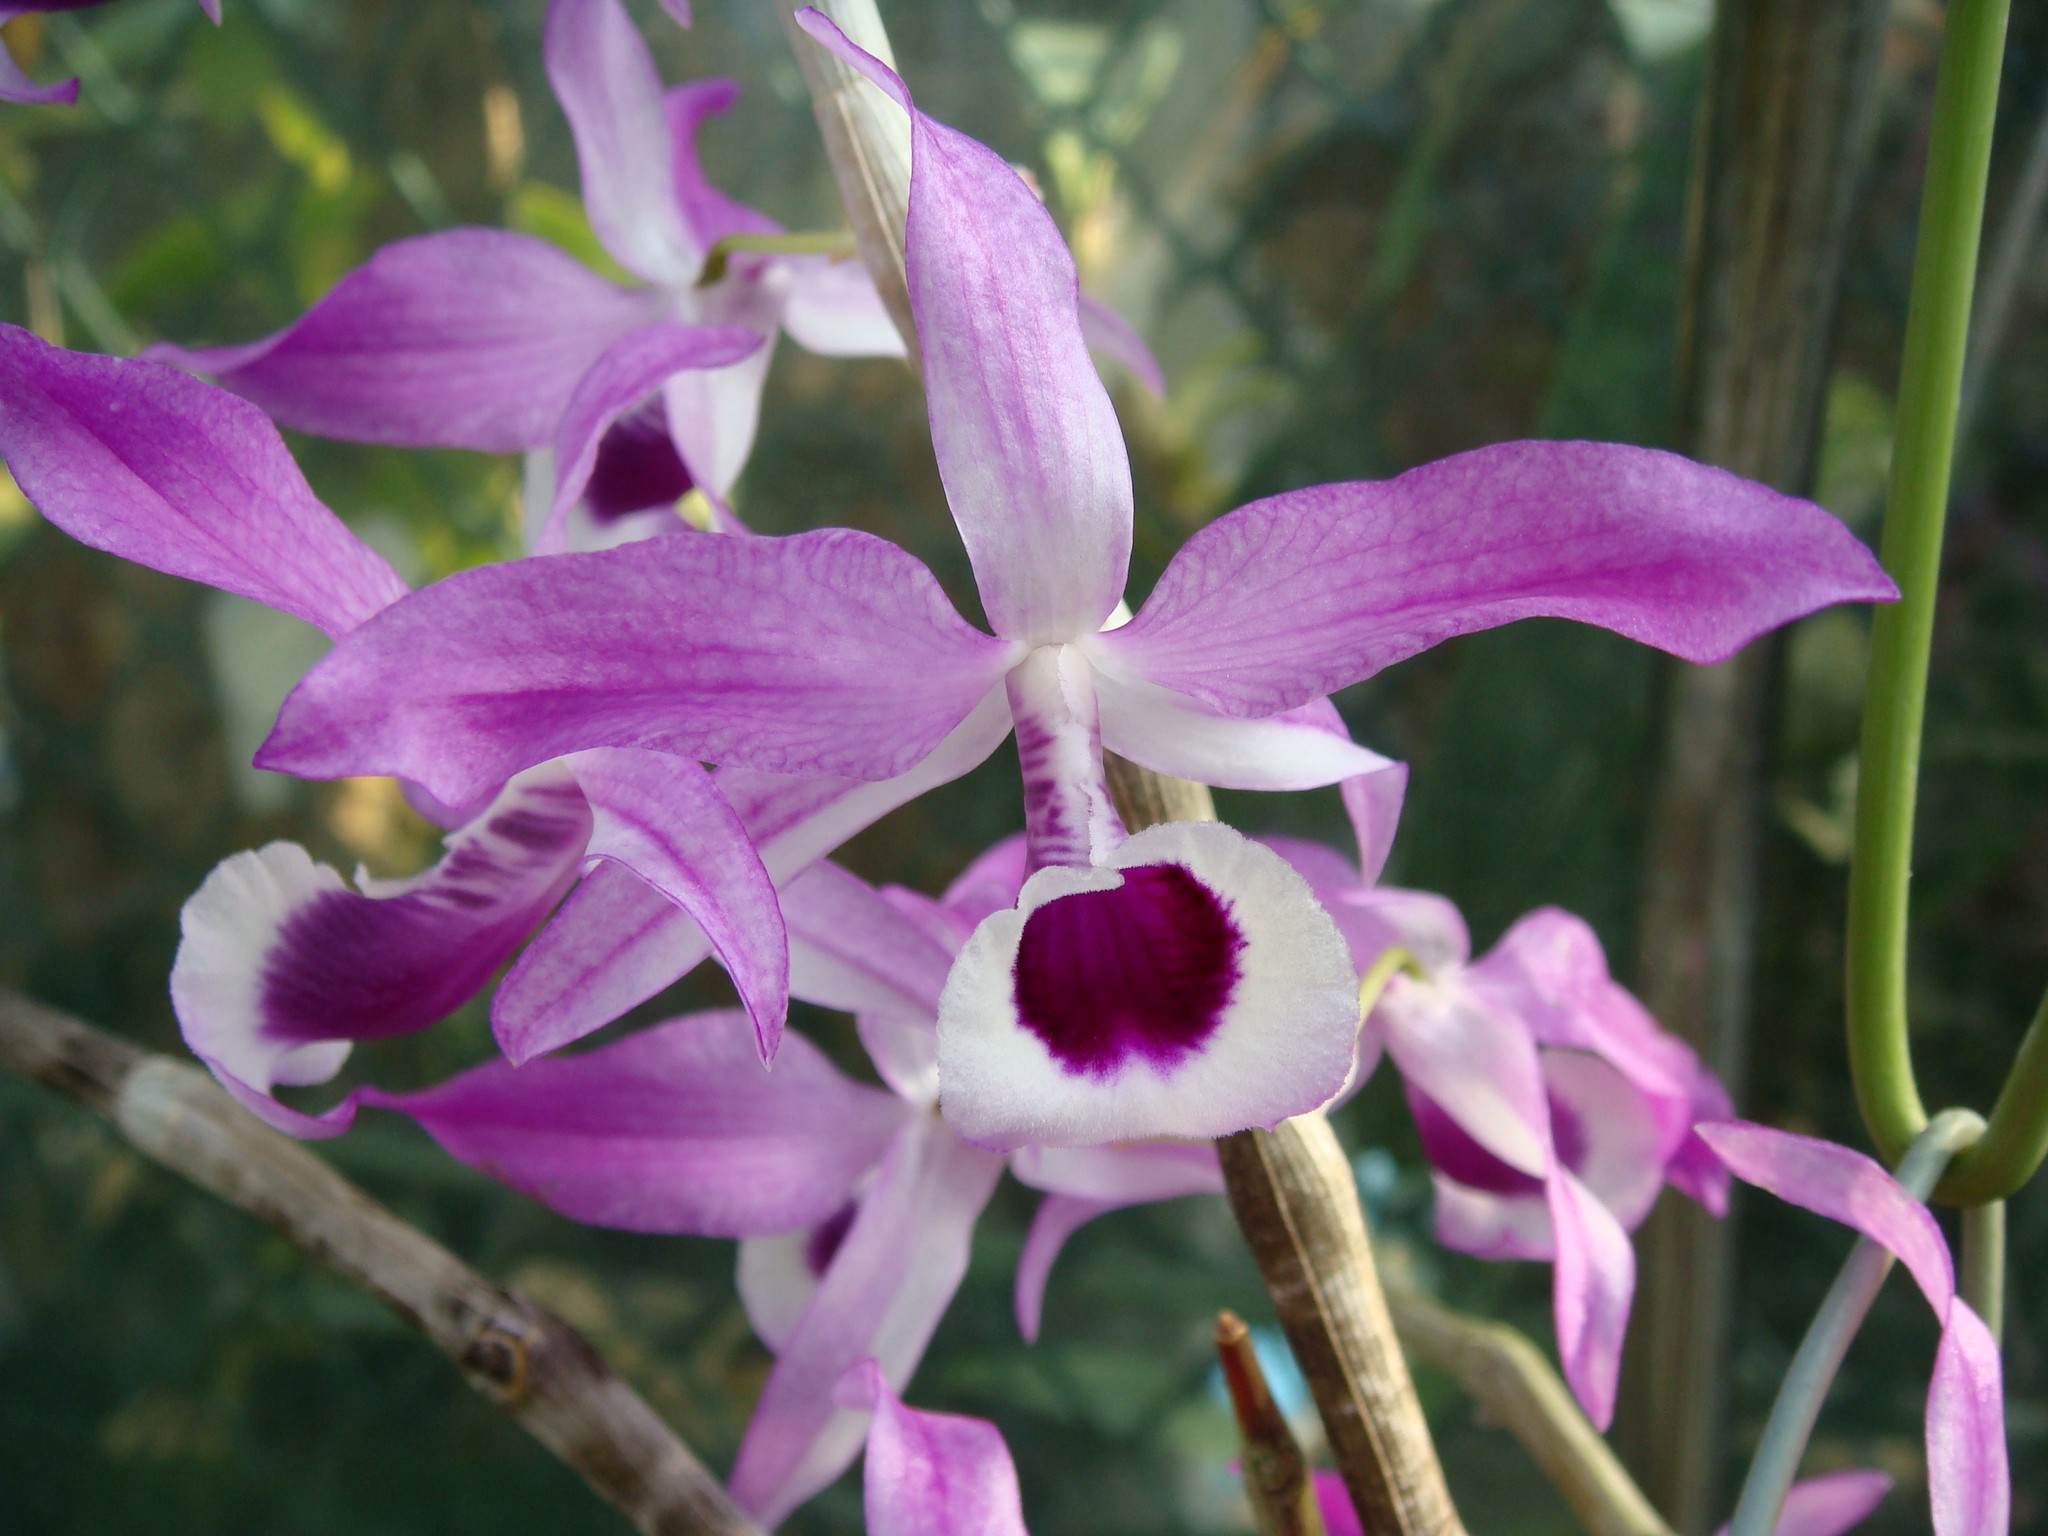 http://orchids.la.coocan.jp/Dendrobium/Dendrobium%20lituiflorum/DSC01902.JPG